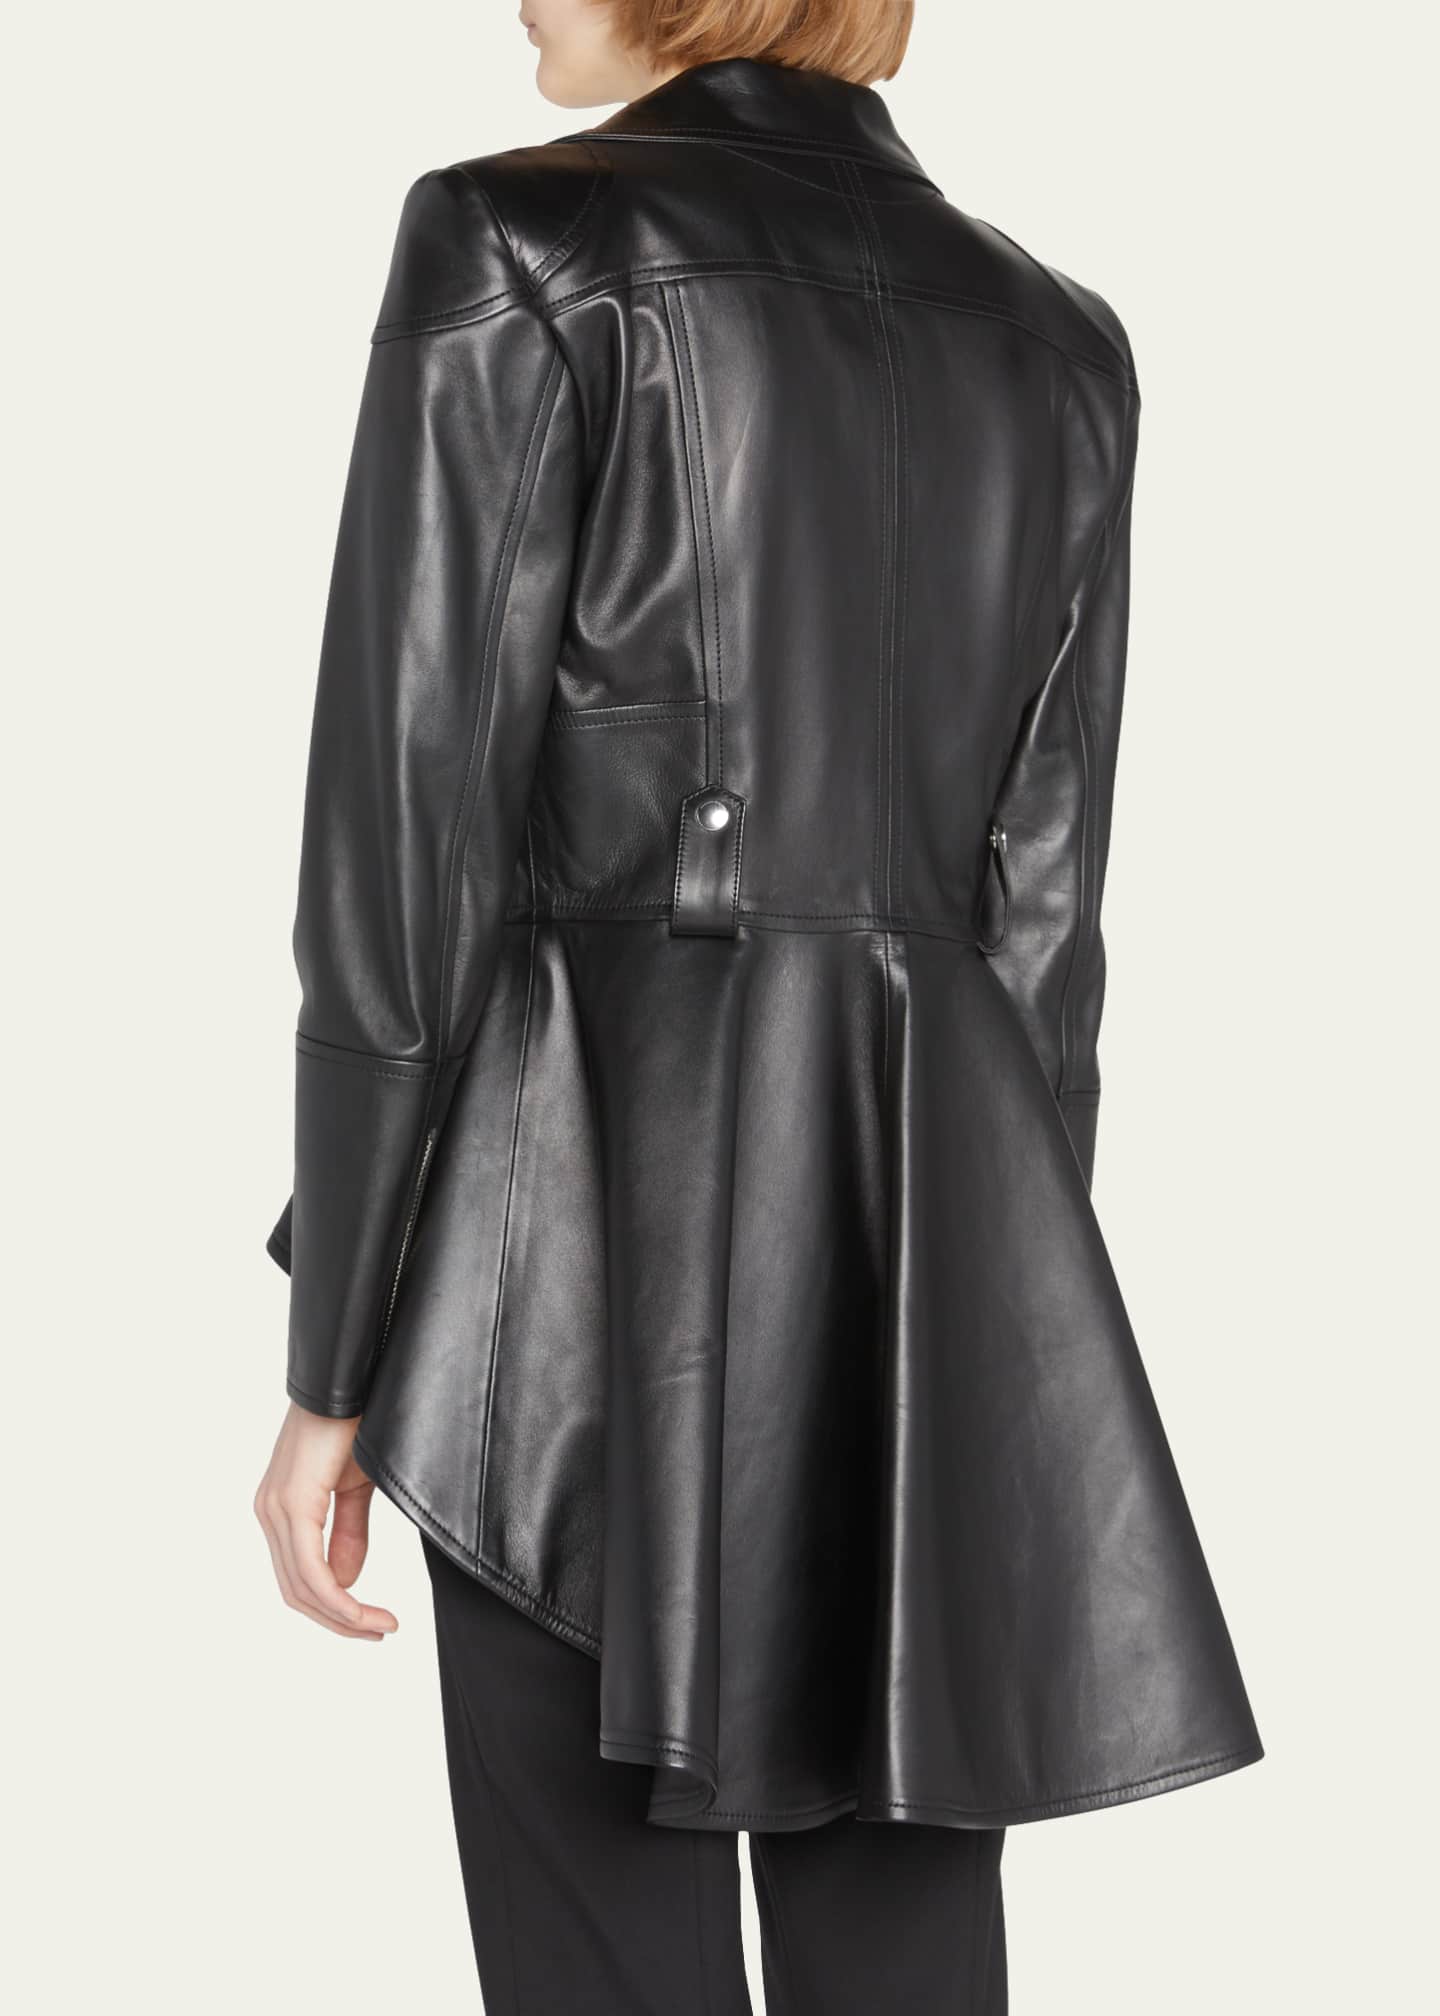 Alexander McQueen Leather Fit & Flare Biker Jacket - Bergdorf Goodman